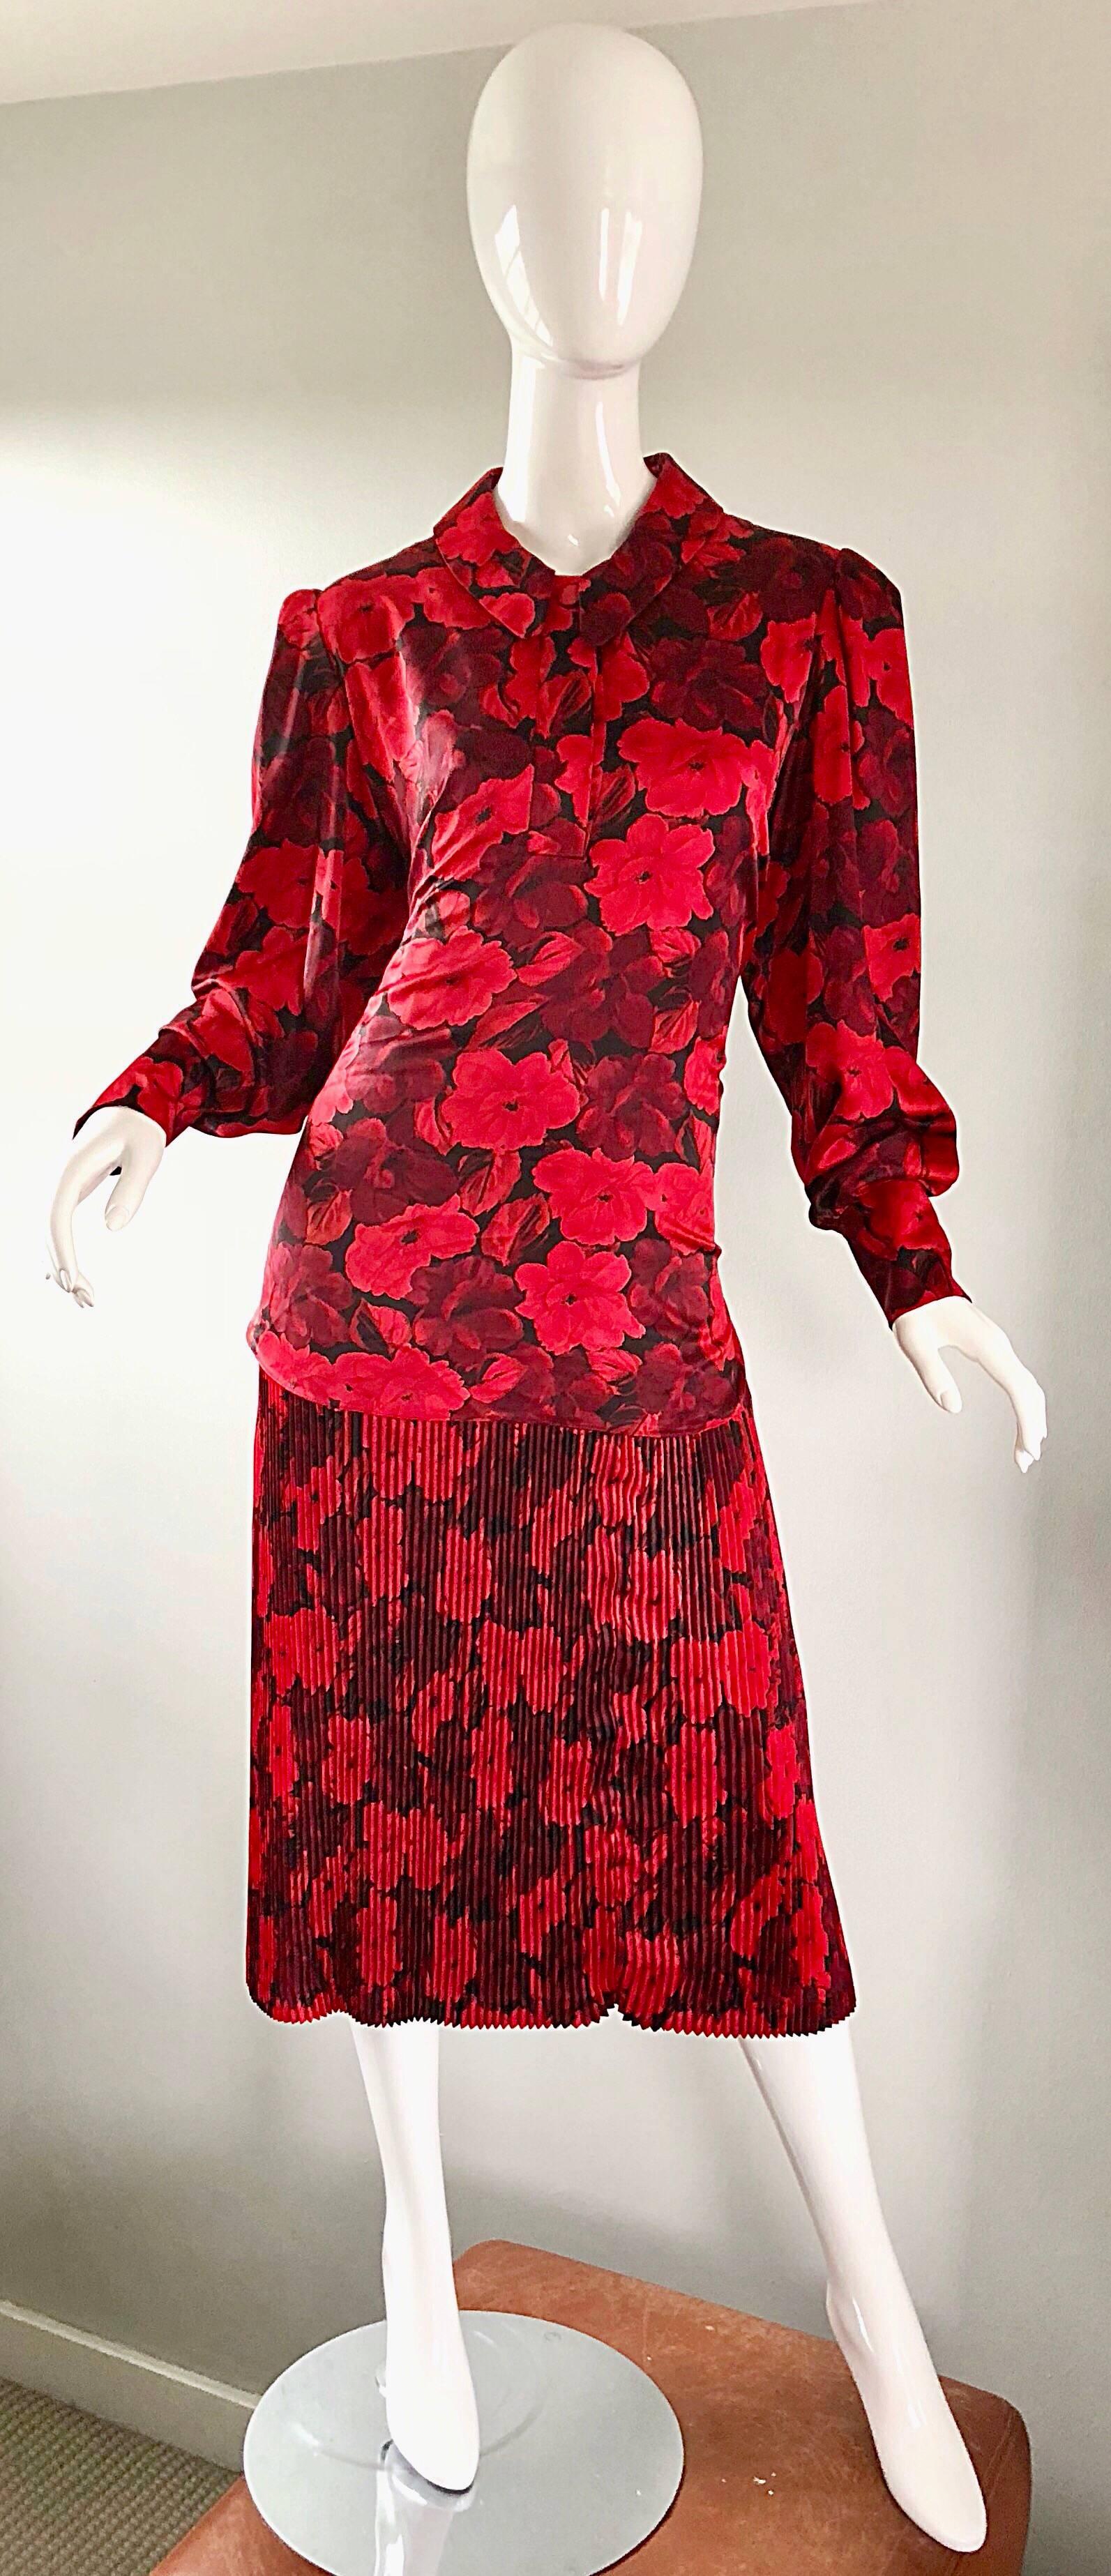 Magnifique robe vintage NINA RICCI des années 1980, imprimée de fleurs rouges et noires, à taille tombante, inspirée du style des années 1920 ! Imprimé floral rouge et noir sur toute la surface. Boutons cachés sur le devant de l'encolure et à chaque